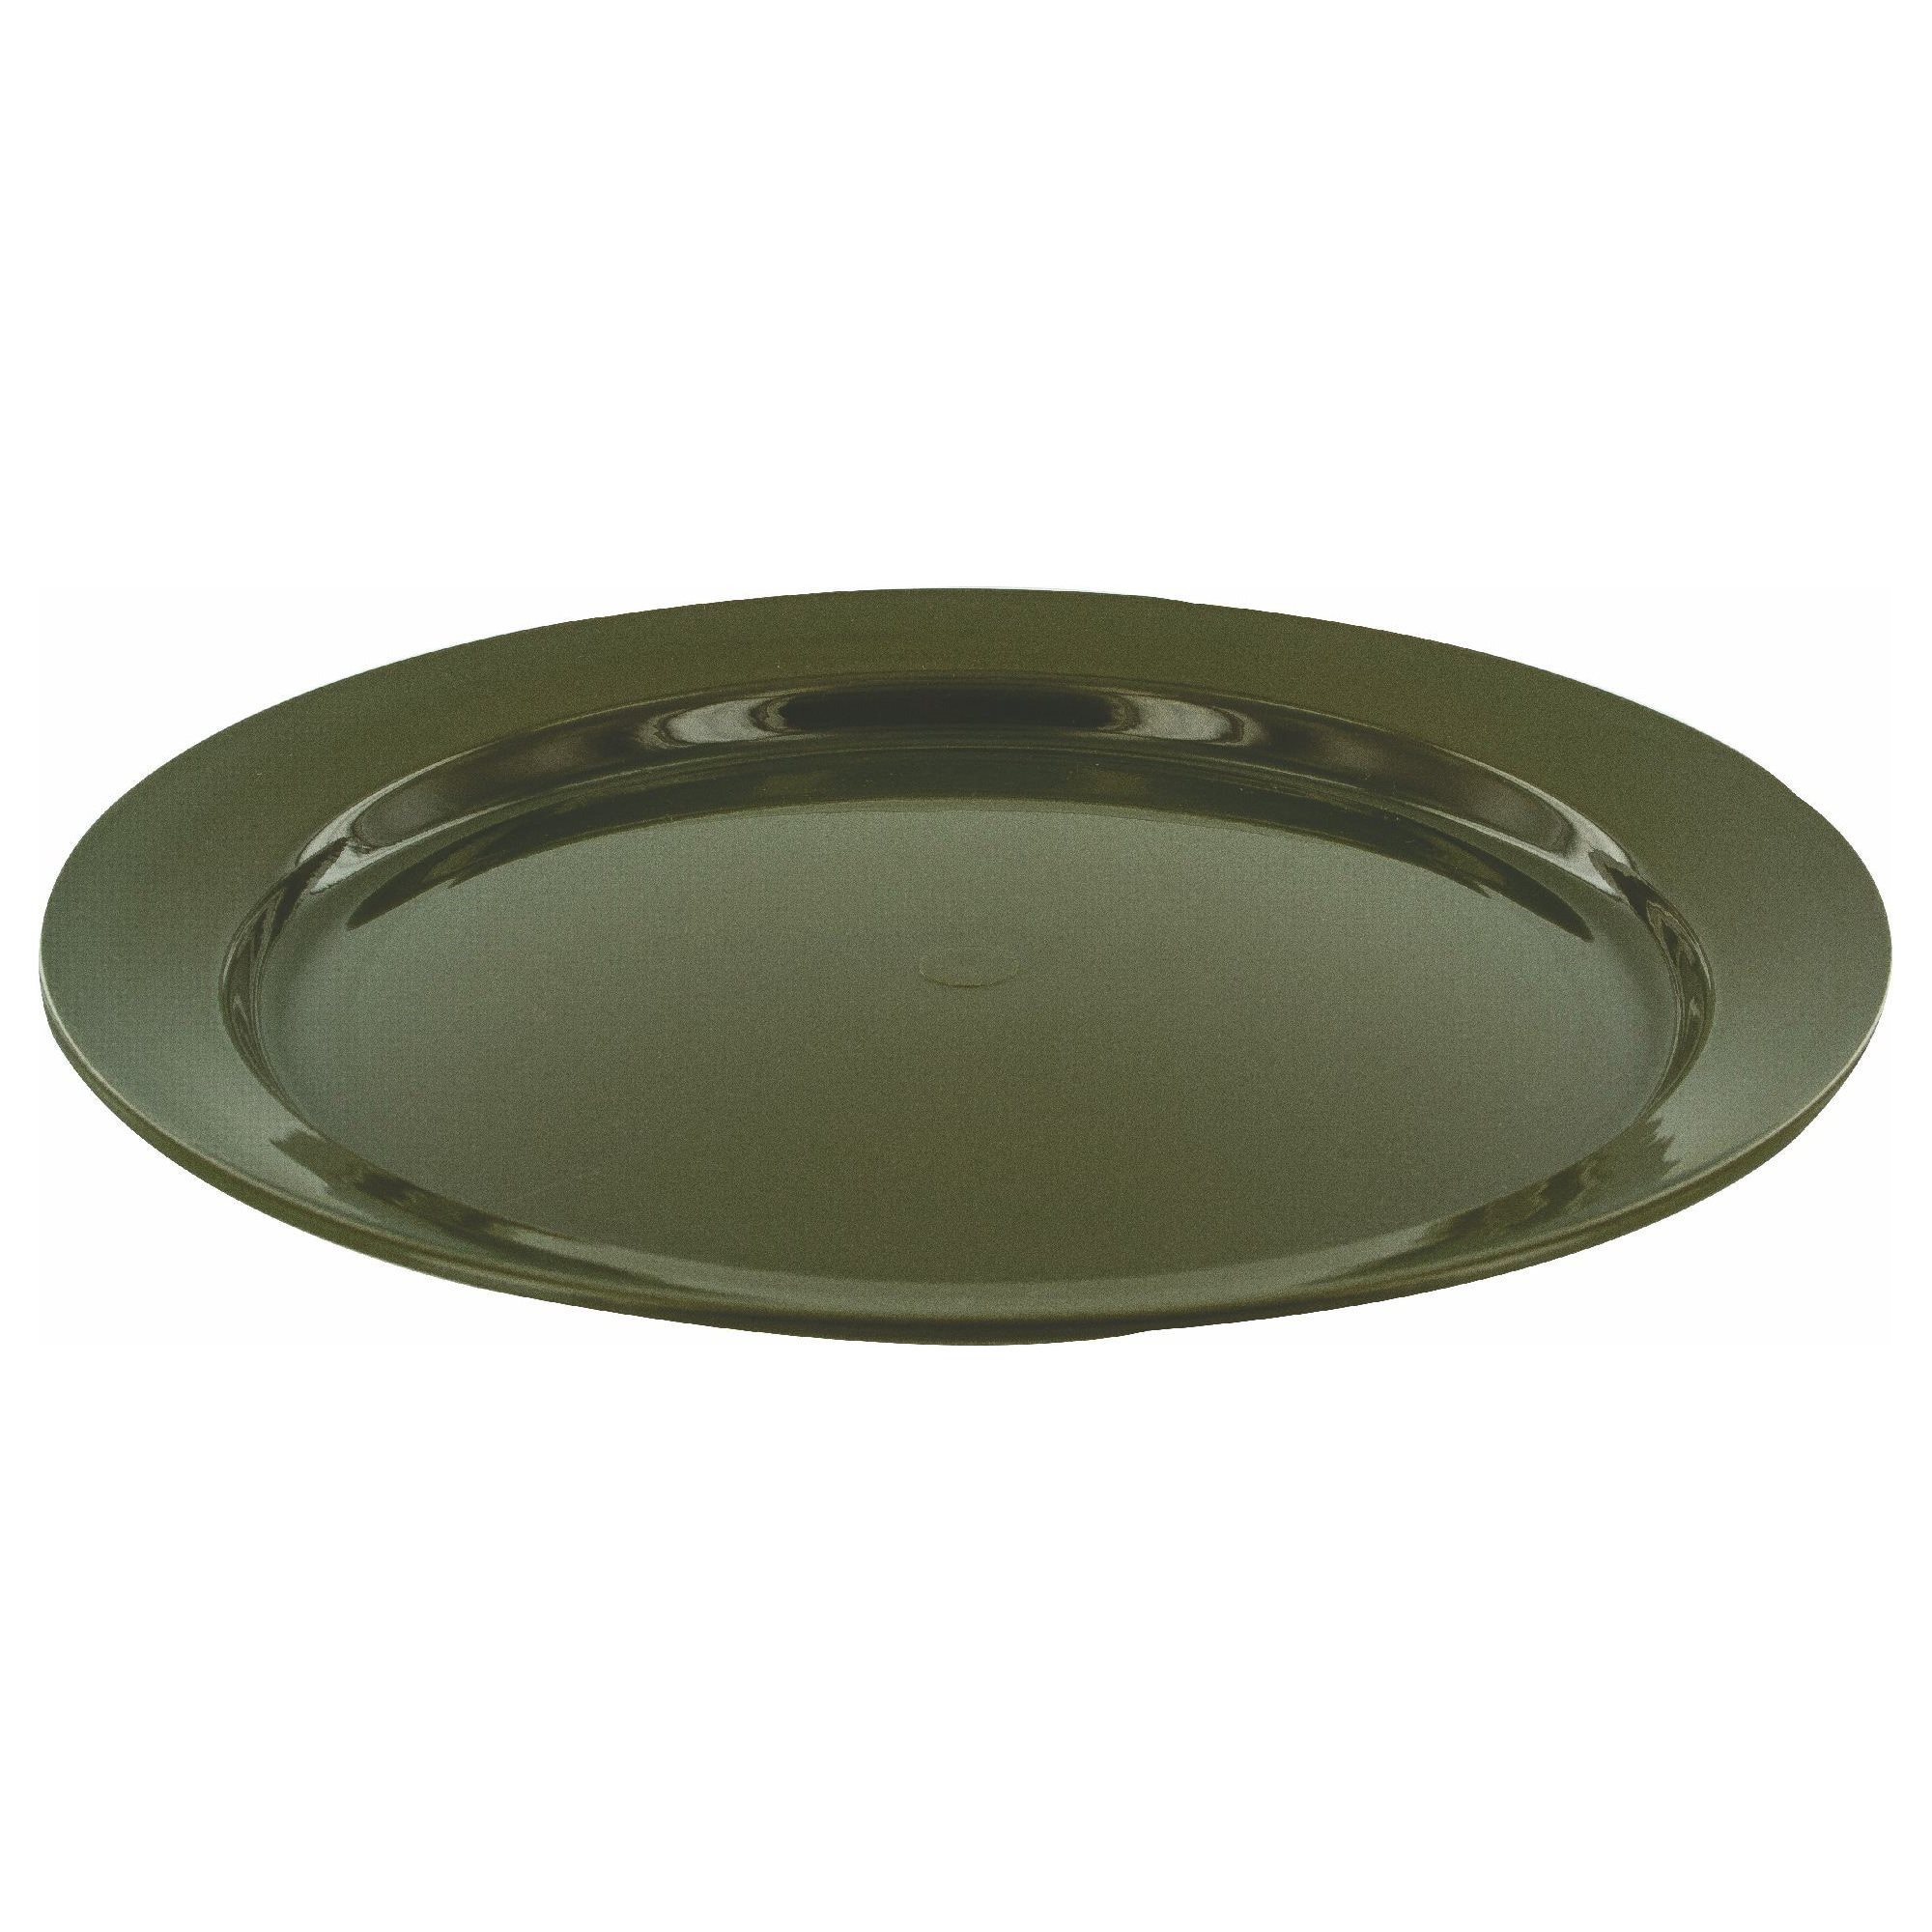 24cm Flat Plate Olive PRO-FORCE CP066-OG L-11